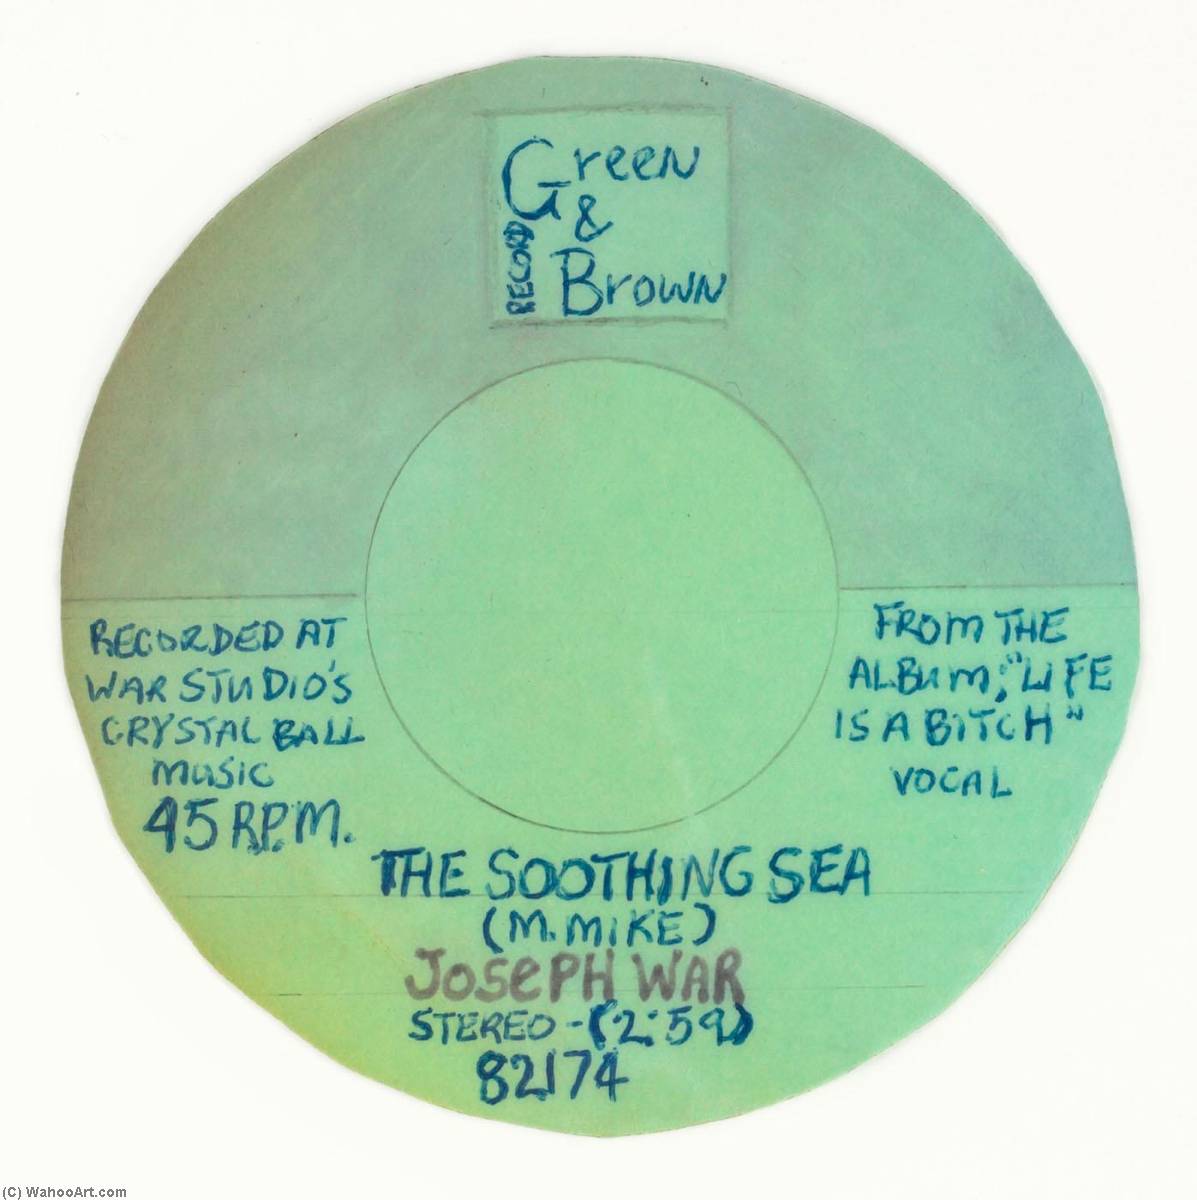 Wikioo.org - Bách khoa toàn thư về mỹ thuật - Vẽ tranh, Tác phẩm nghệ thuật Mingering Mike - GREEN BROWN RECORD FROM THE ALBUM, LIFE IS A BITCH VOCAL, THE SOOTHING SEA